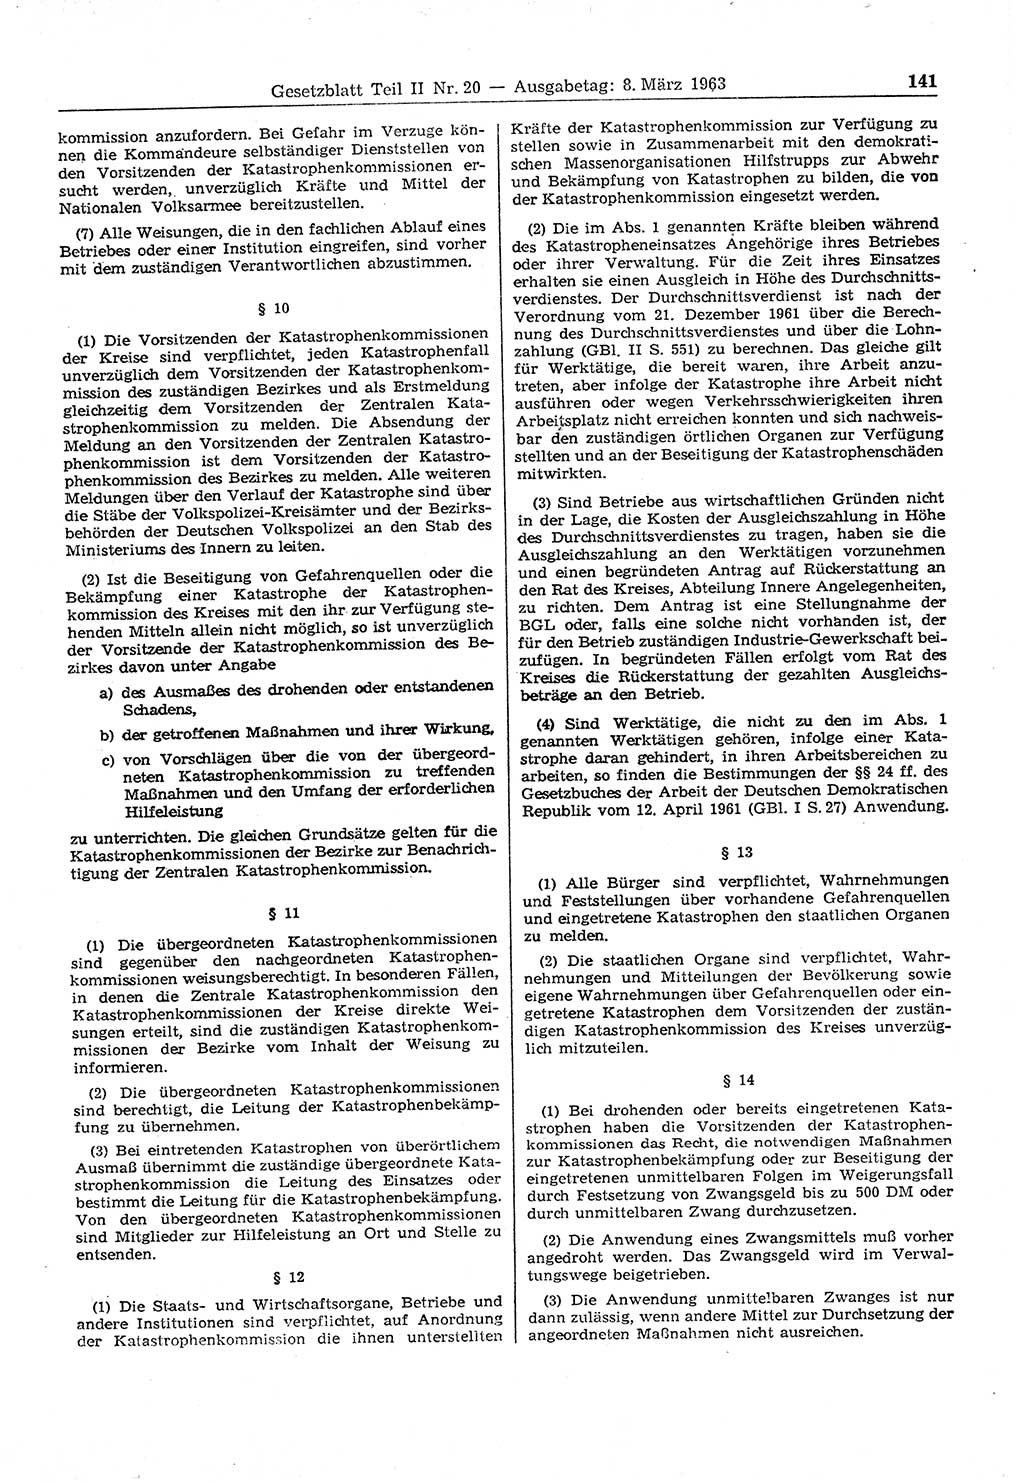 Gesetzblatt (GBl.) der Deutschen Demokratischen Republik (DDR) Teil ⅠⅠ 1963, Seite 141 (GBl. DDR ⅠⅠ 1963, S. 141)